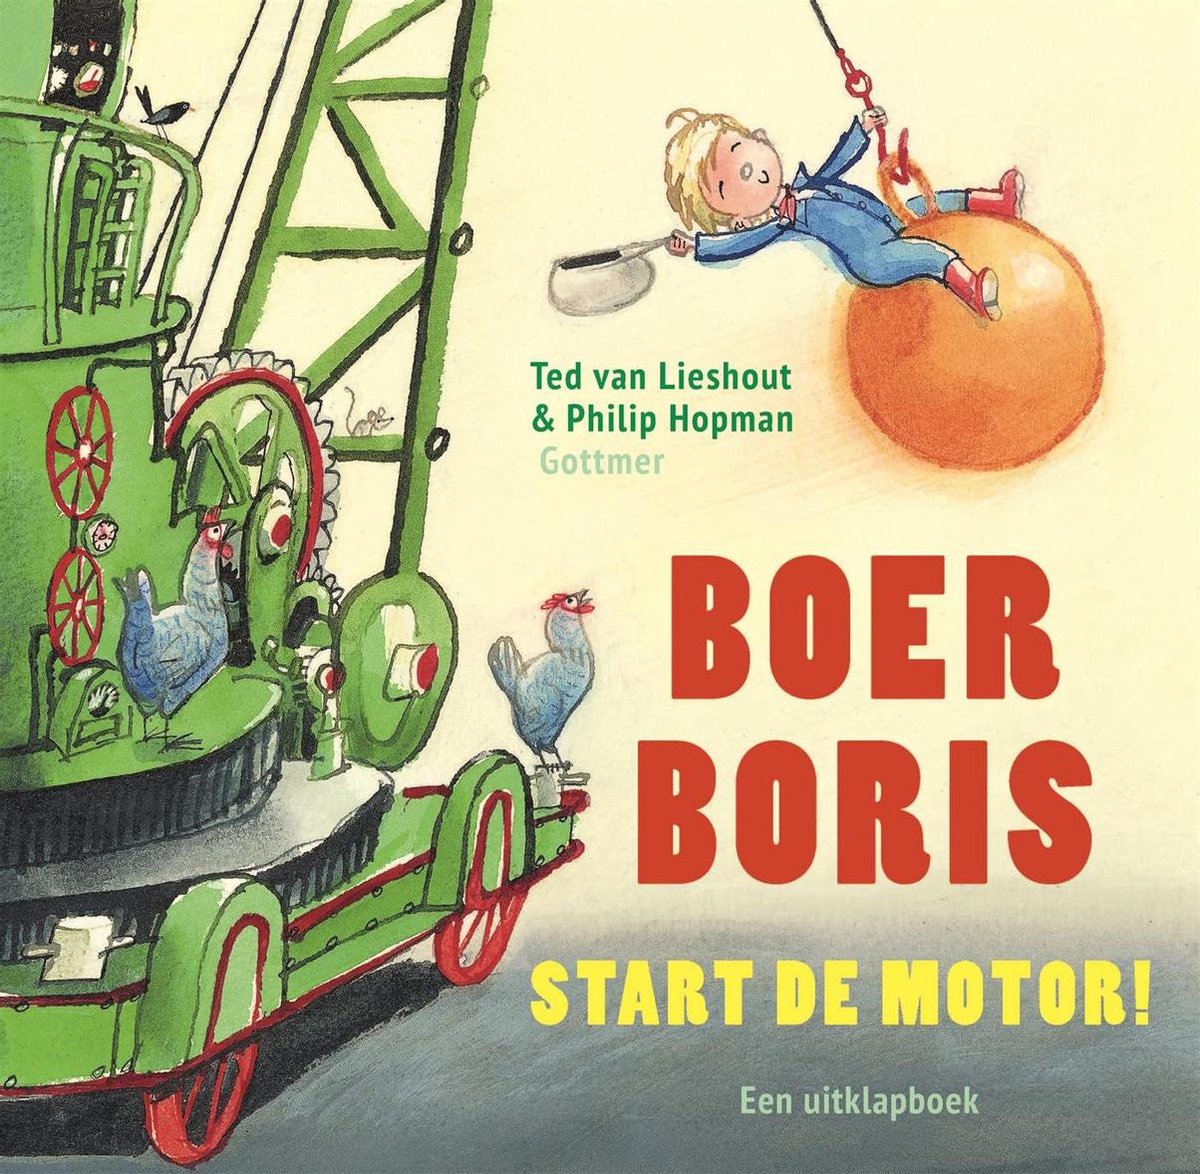 Boer Boris start de motor! - Ted van Lieshout (vanaf 2 jaar)